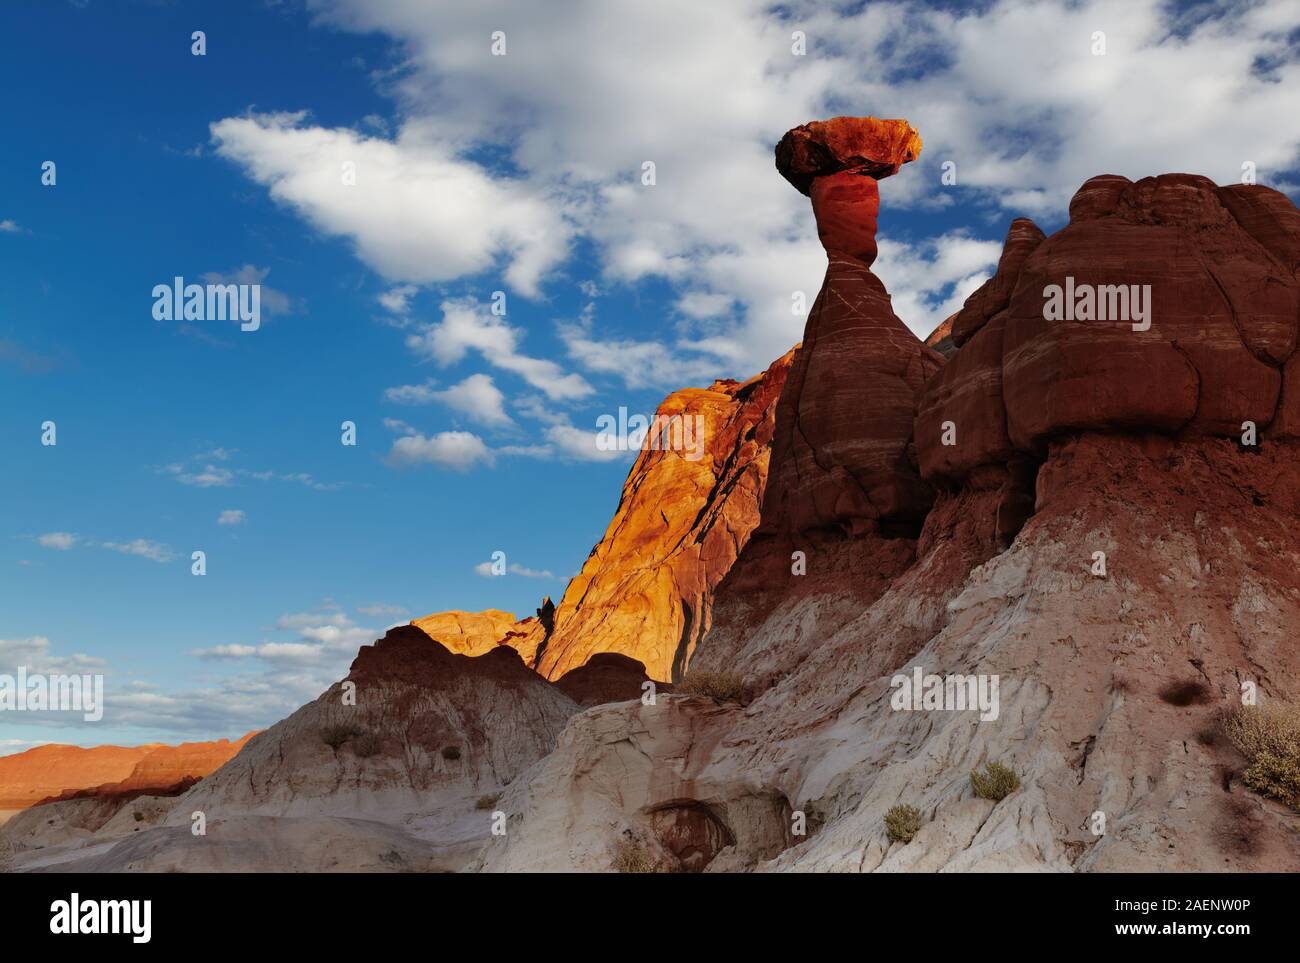 Toadstool Hoodoo increíble roca con forma de hongo en el desierto de Utah, EE.UU. Foto de stock